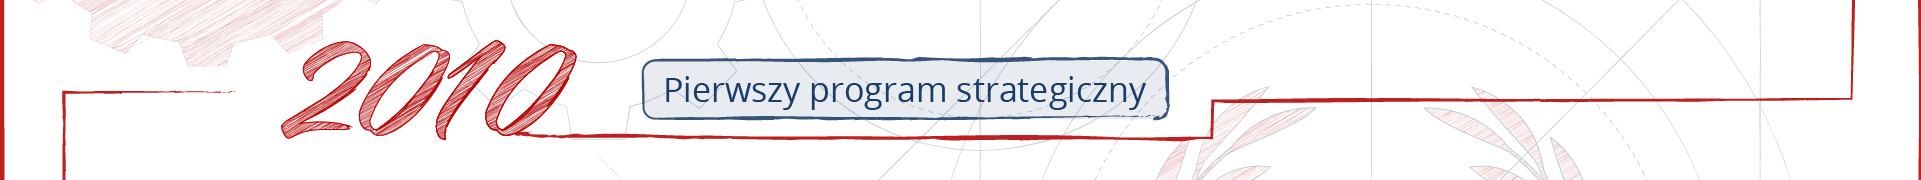 Fragment osi czasu. Ozdobny napis 2010, obok ramka z napisem „Pierwszy program strategiczny”.